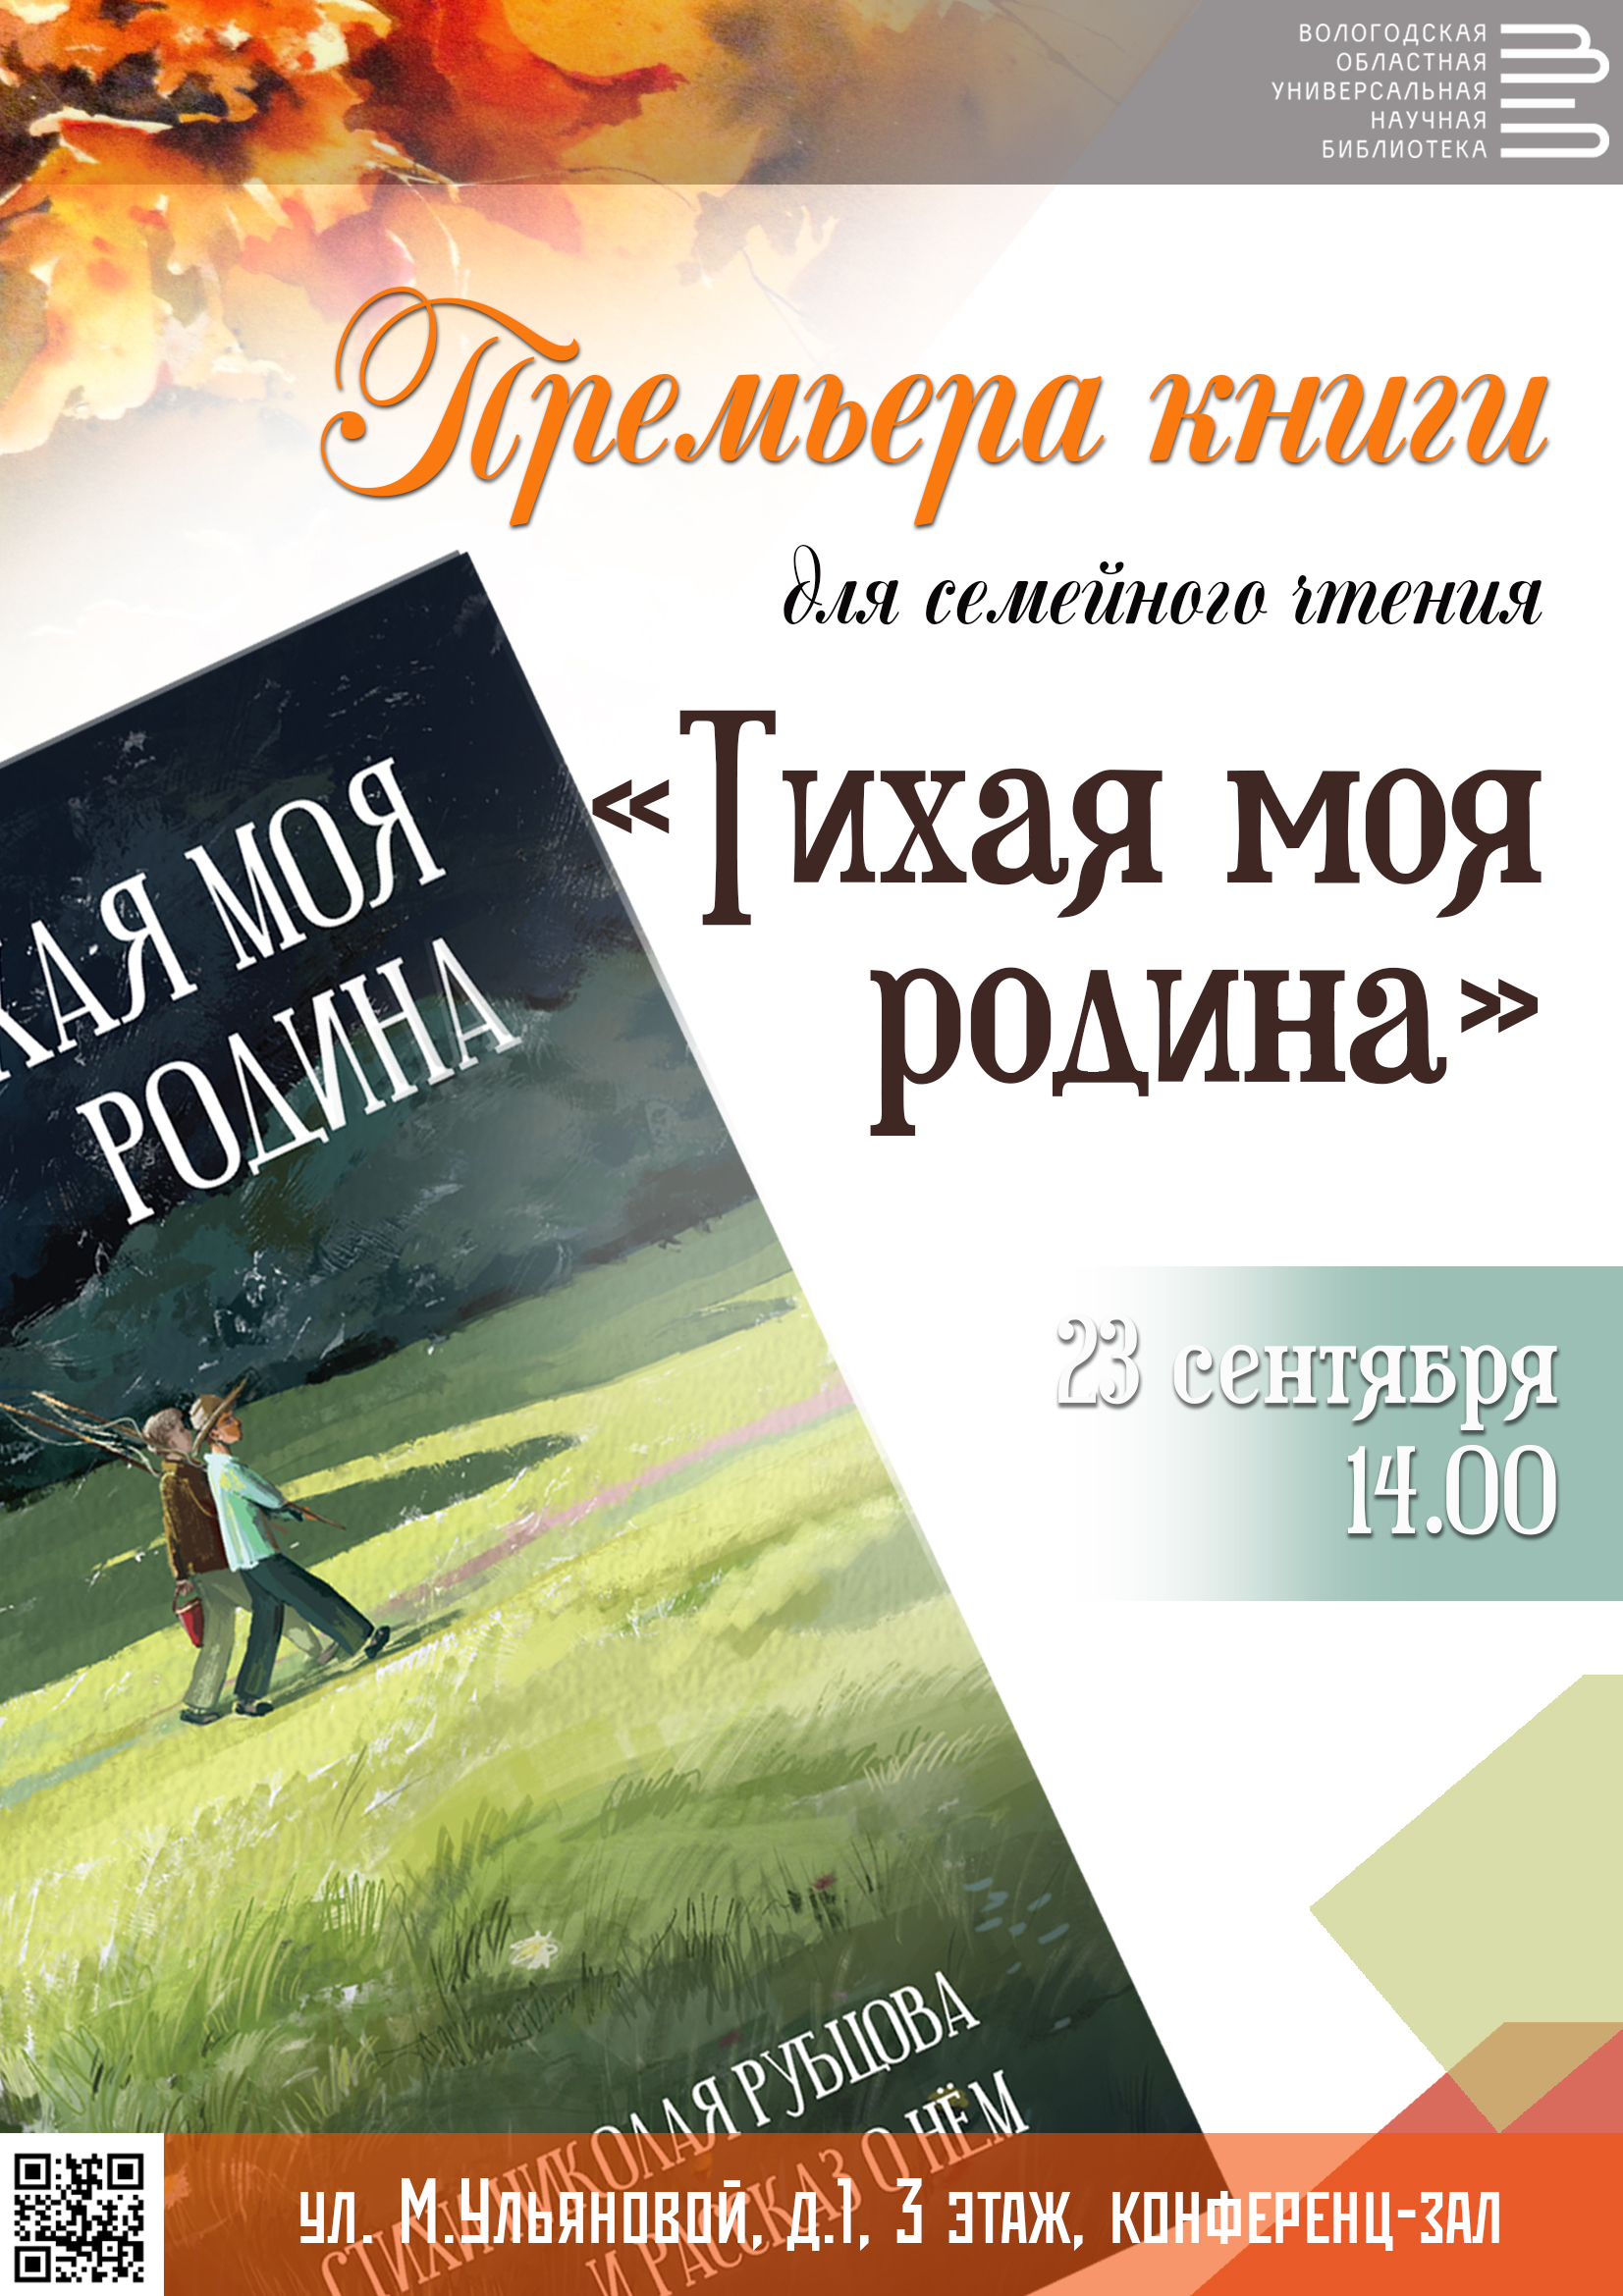 Книгу для семейного чтения о Николае Рубцове представят в областной библиотеке